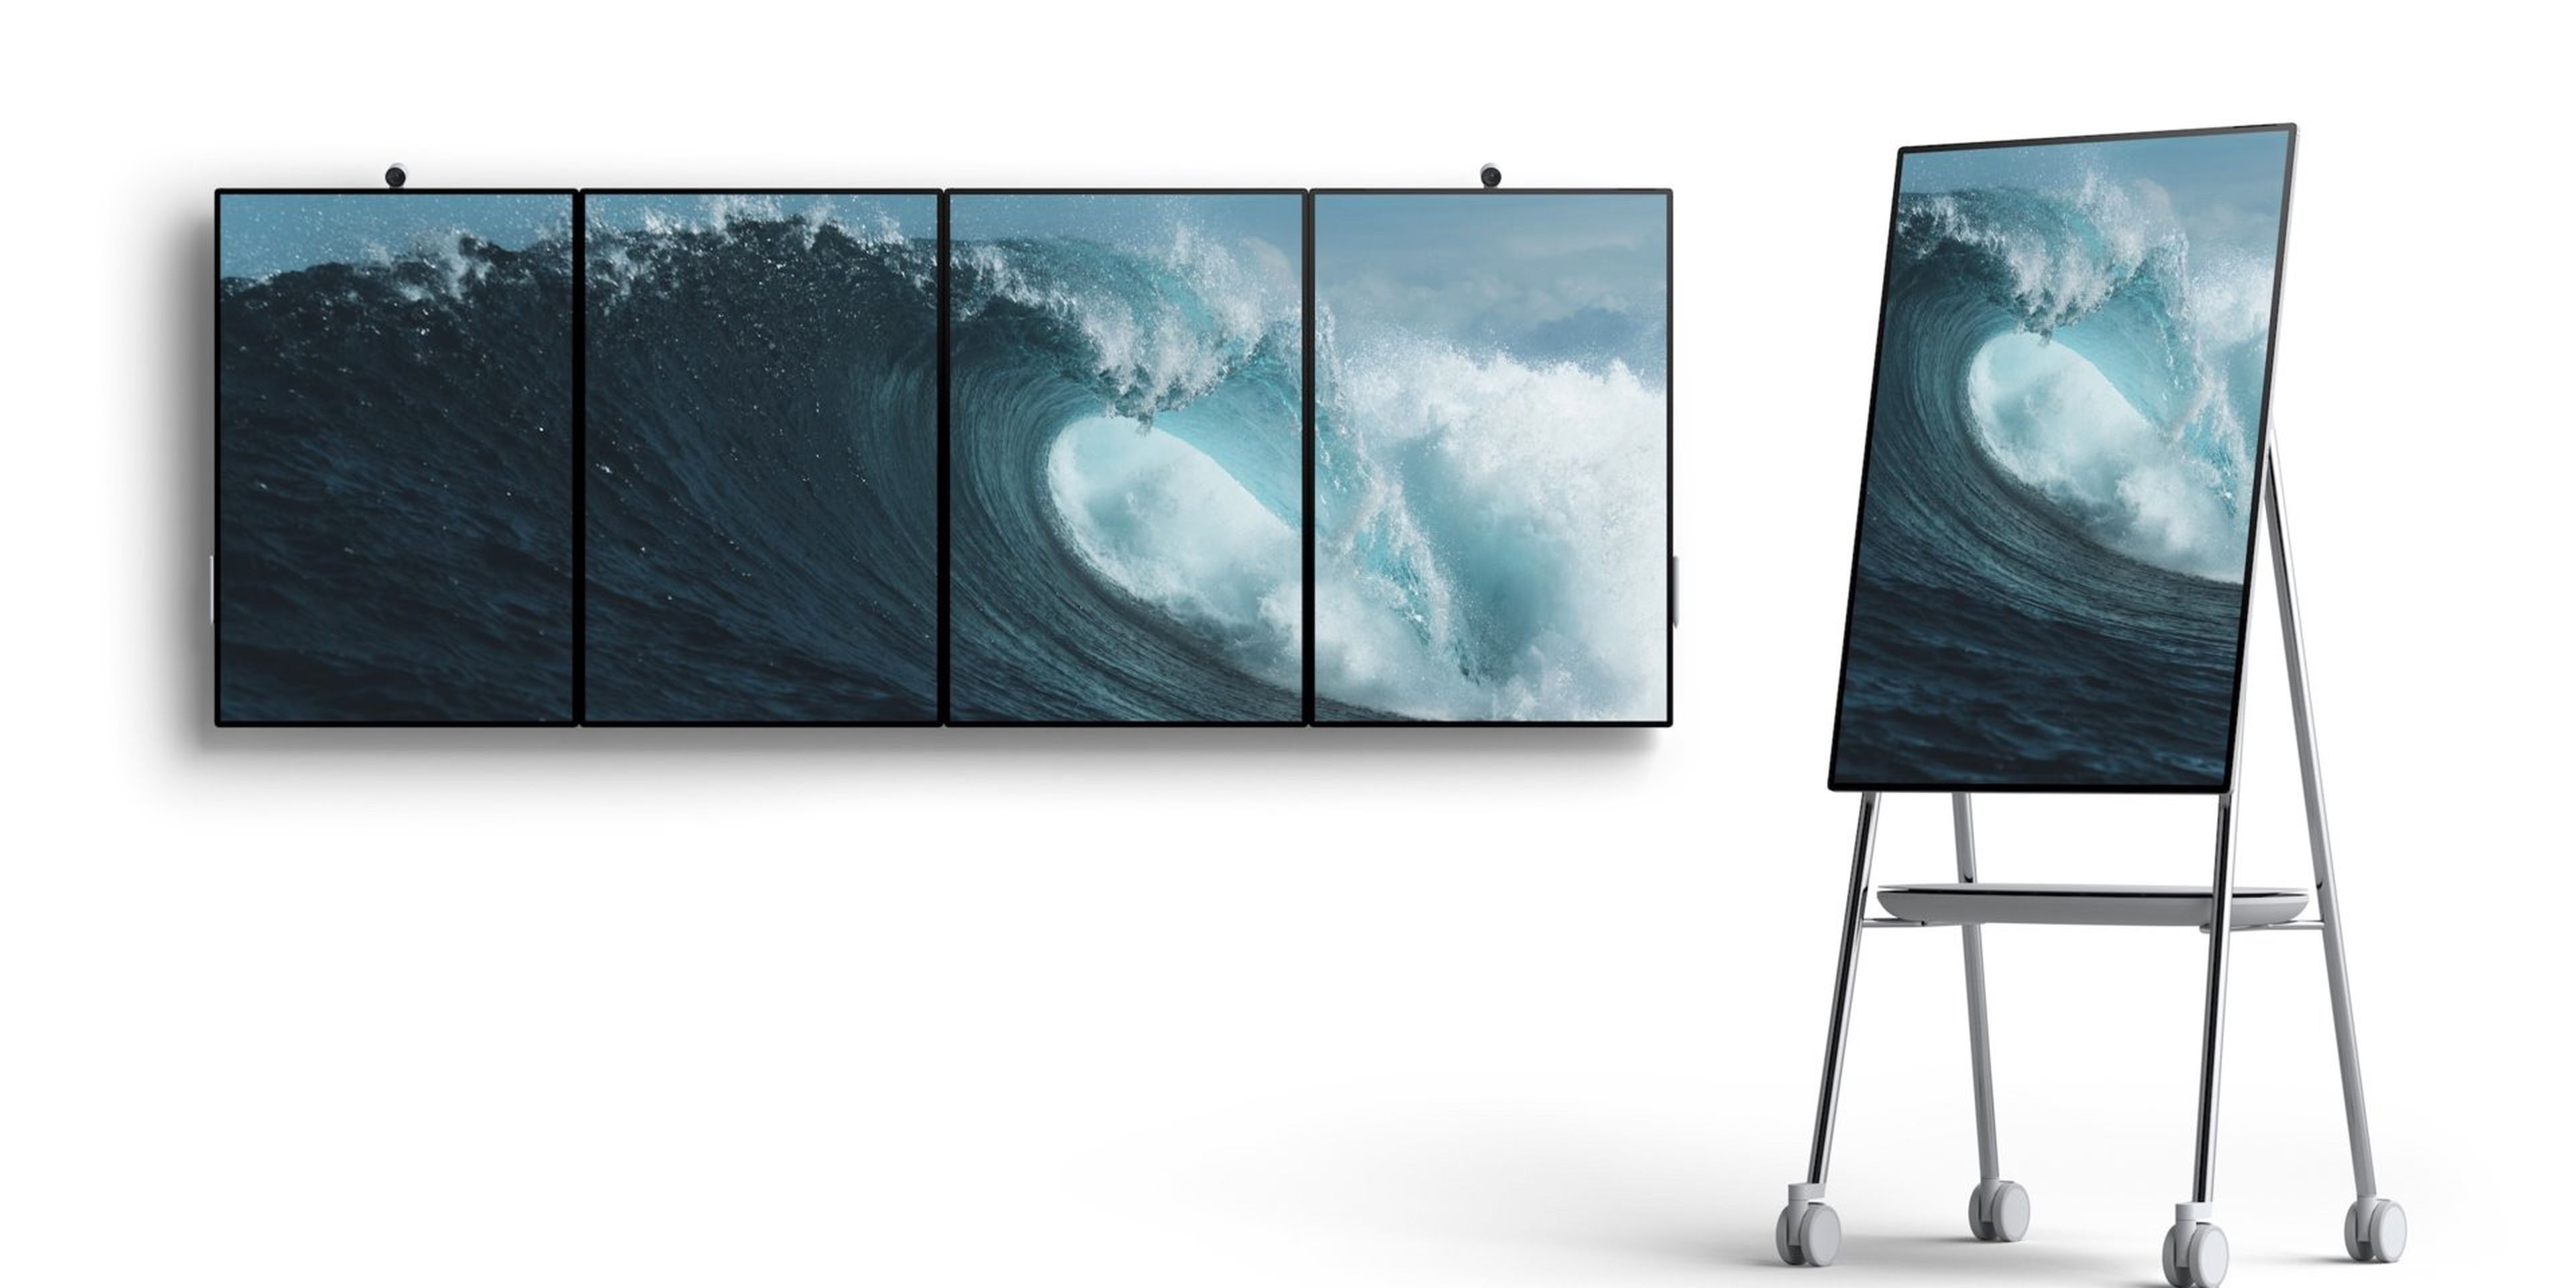 La nueva Surface Hub 2 de Microsoft será capaz de cambiar su orientación de horizontal a vertical. Y se podrán combinar varios dispositivos en una única pantalla.